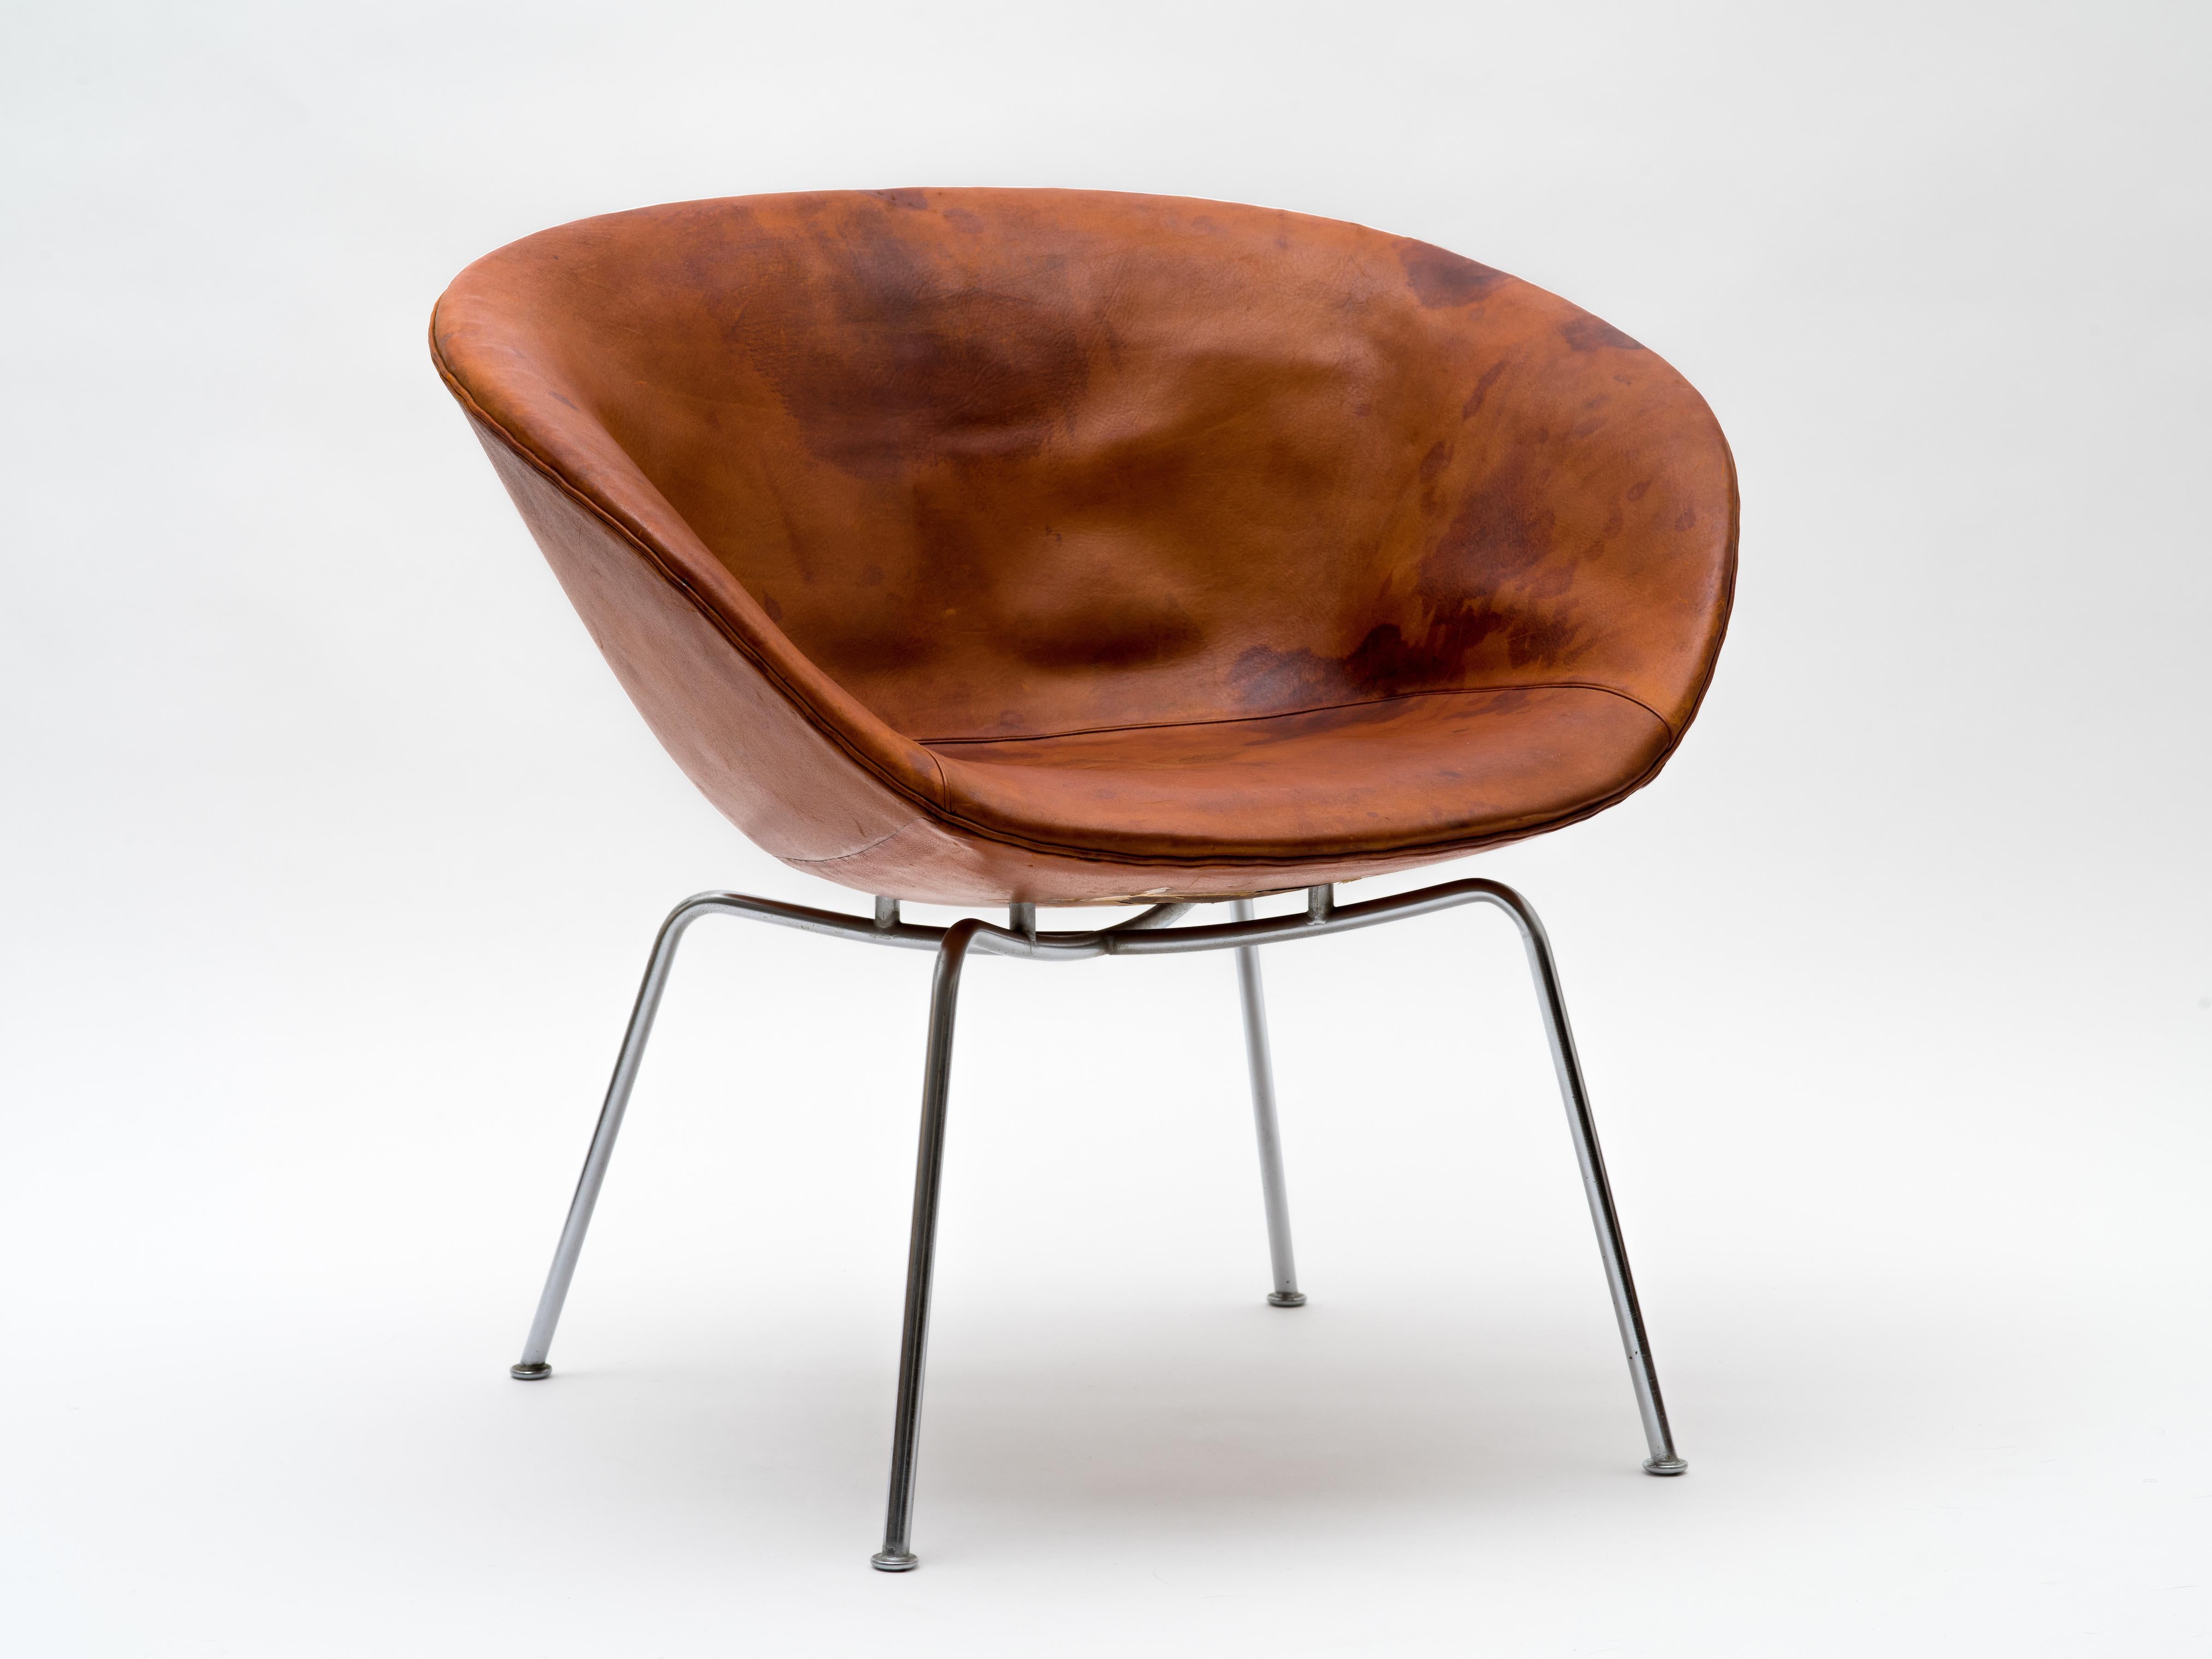 Ein Topfstuhl von Arne Jacobsen, Modell 3318, bestehend aus einem flachen Gestell mit einer schalenförmigen Sitzfläche, die über vier verchromten Stahlbeinen schwebt. Ein täuschend geräumiger und bequemer Stuhl, den Jacobsen 1959 zusammen mit den